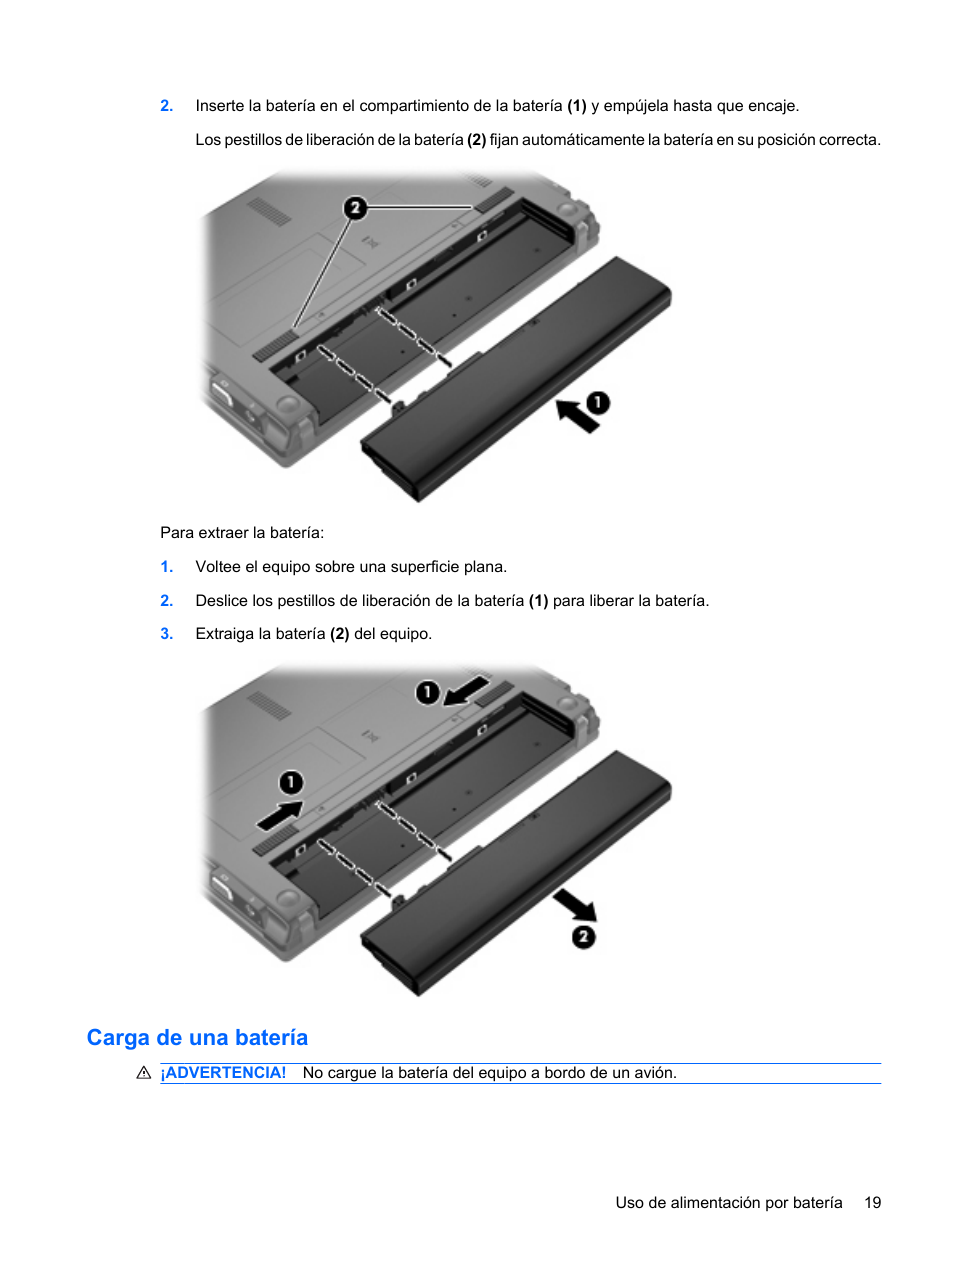 Carga de una batería | HP PC miniatura HP 5103 Manual del usuario | Página 29 / 137